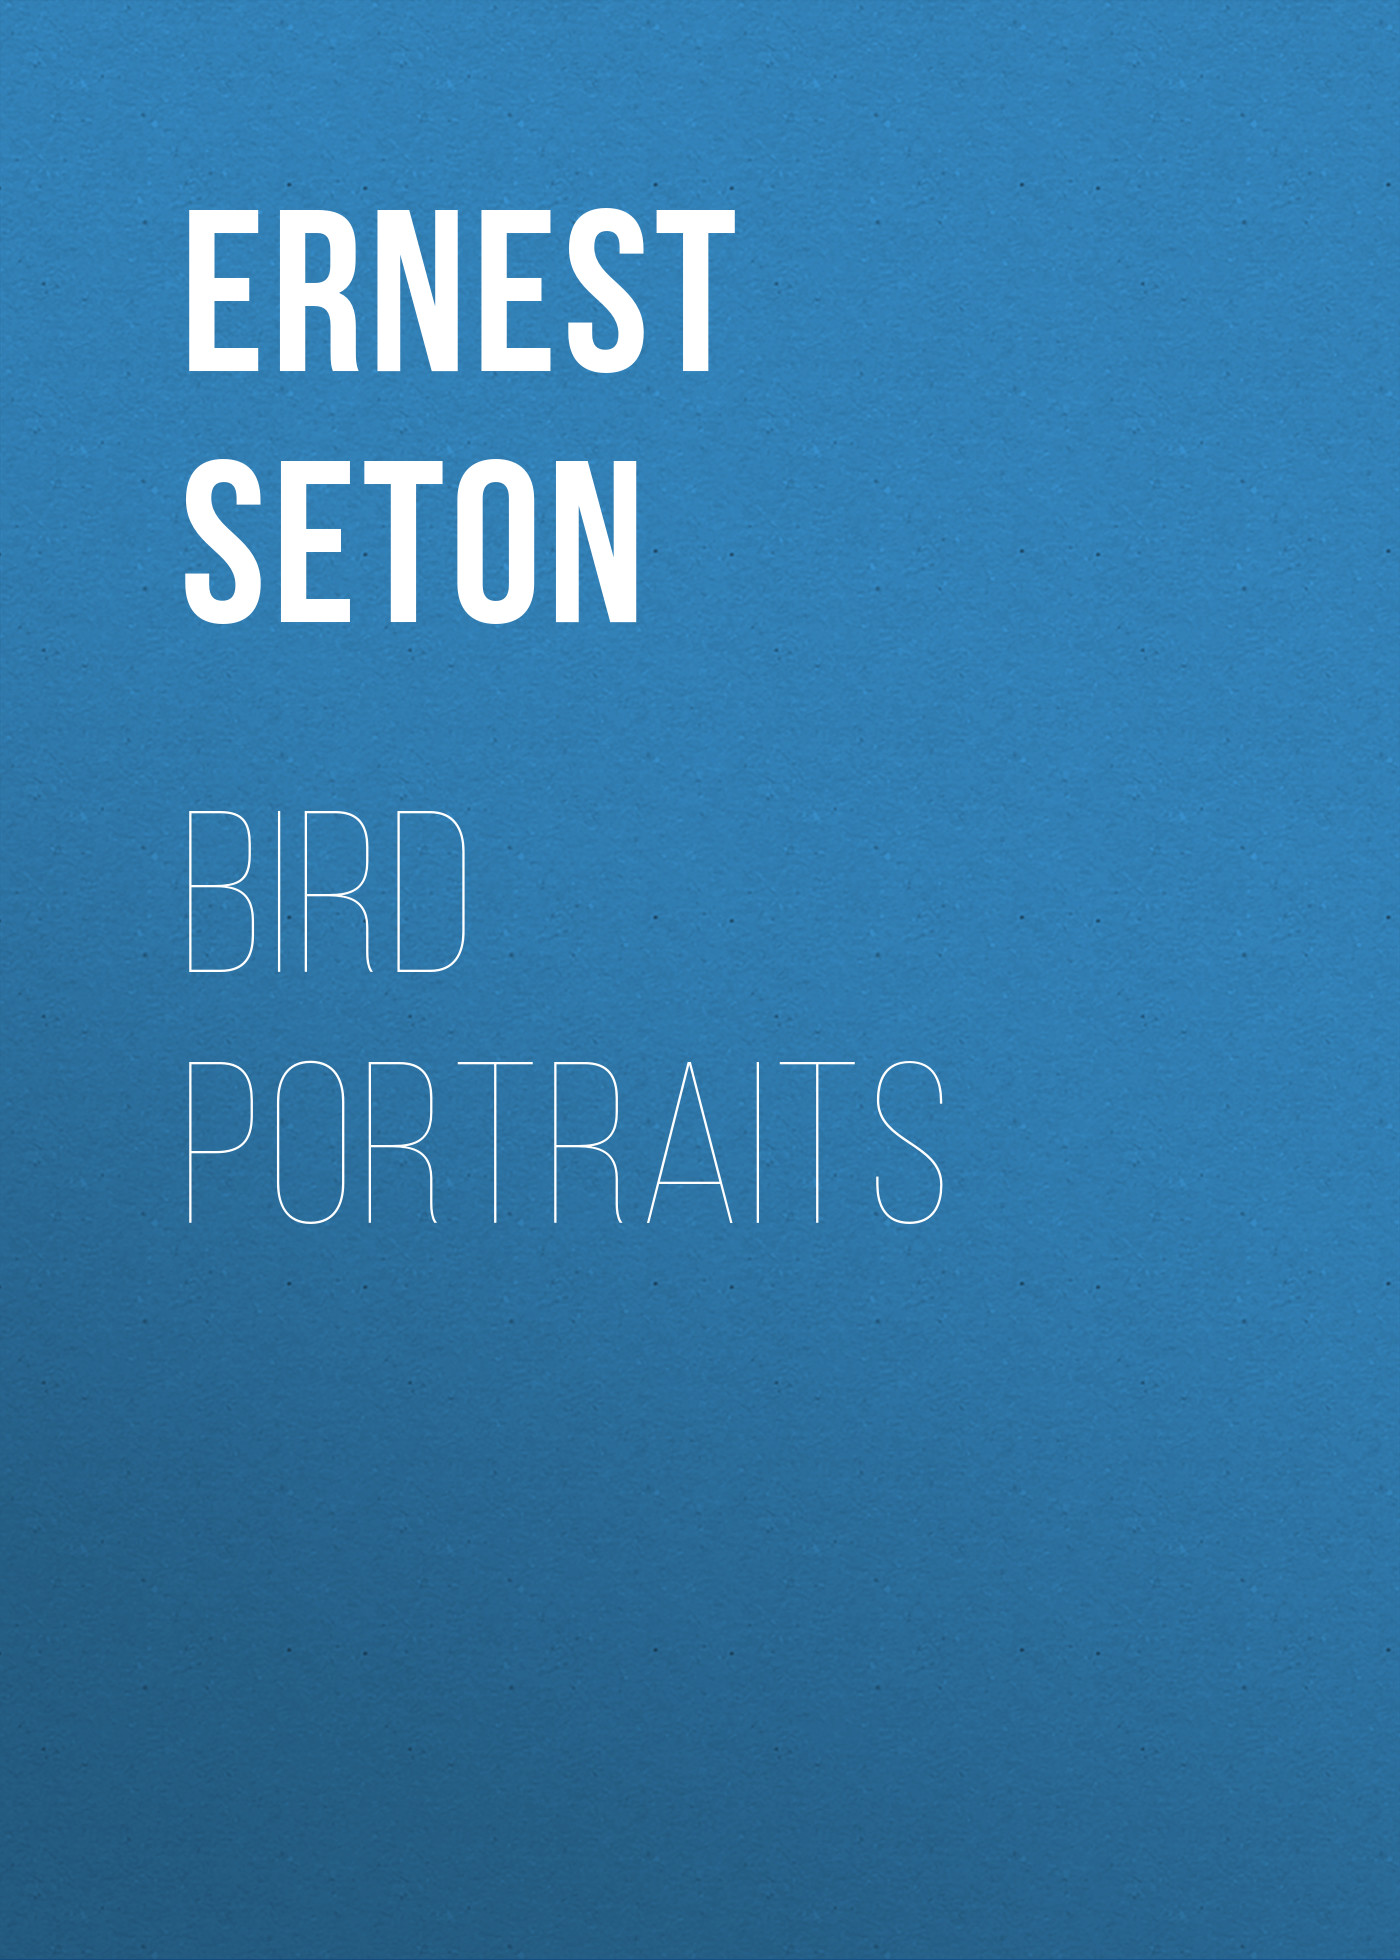 Книга Bird Portraits из серии , созданная Ernest Seton, может относится к жанру Зарубежная классика. Стоимость электронной книги Bird Portraits с идентификатором 23164947 составляет 5.99 руб.